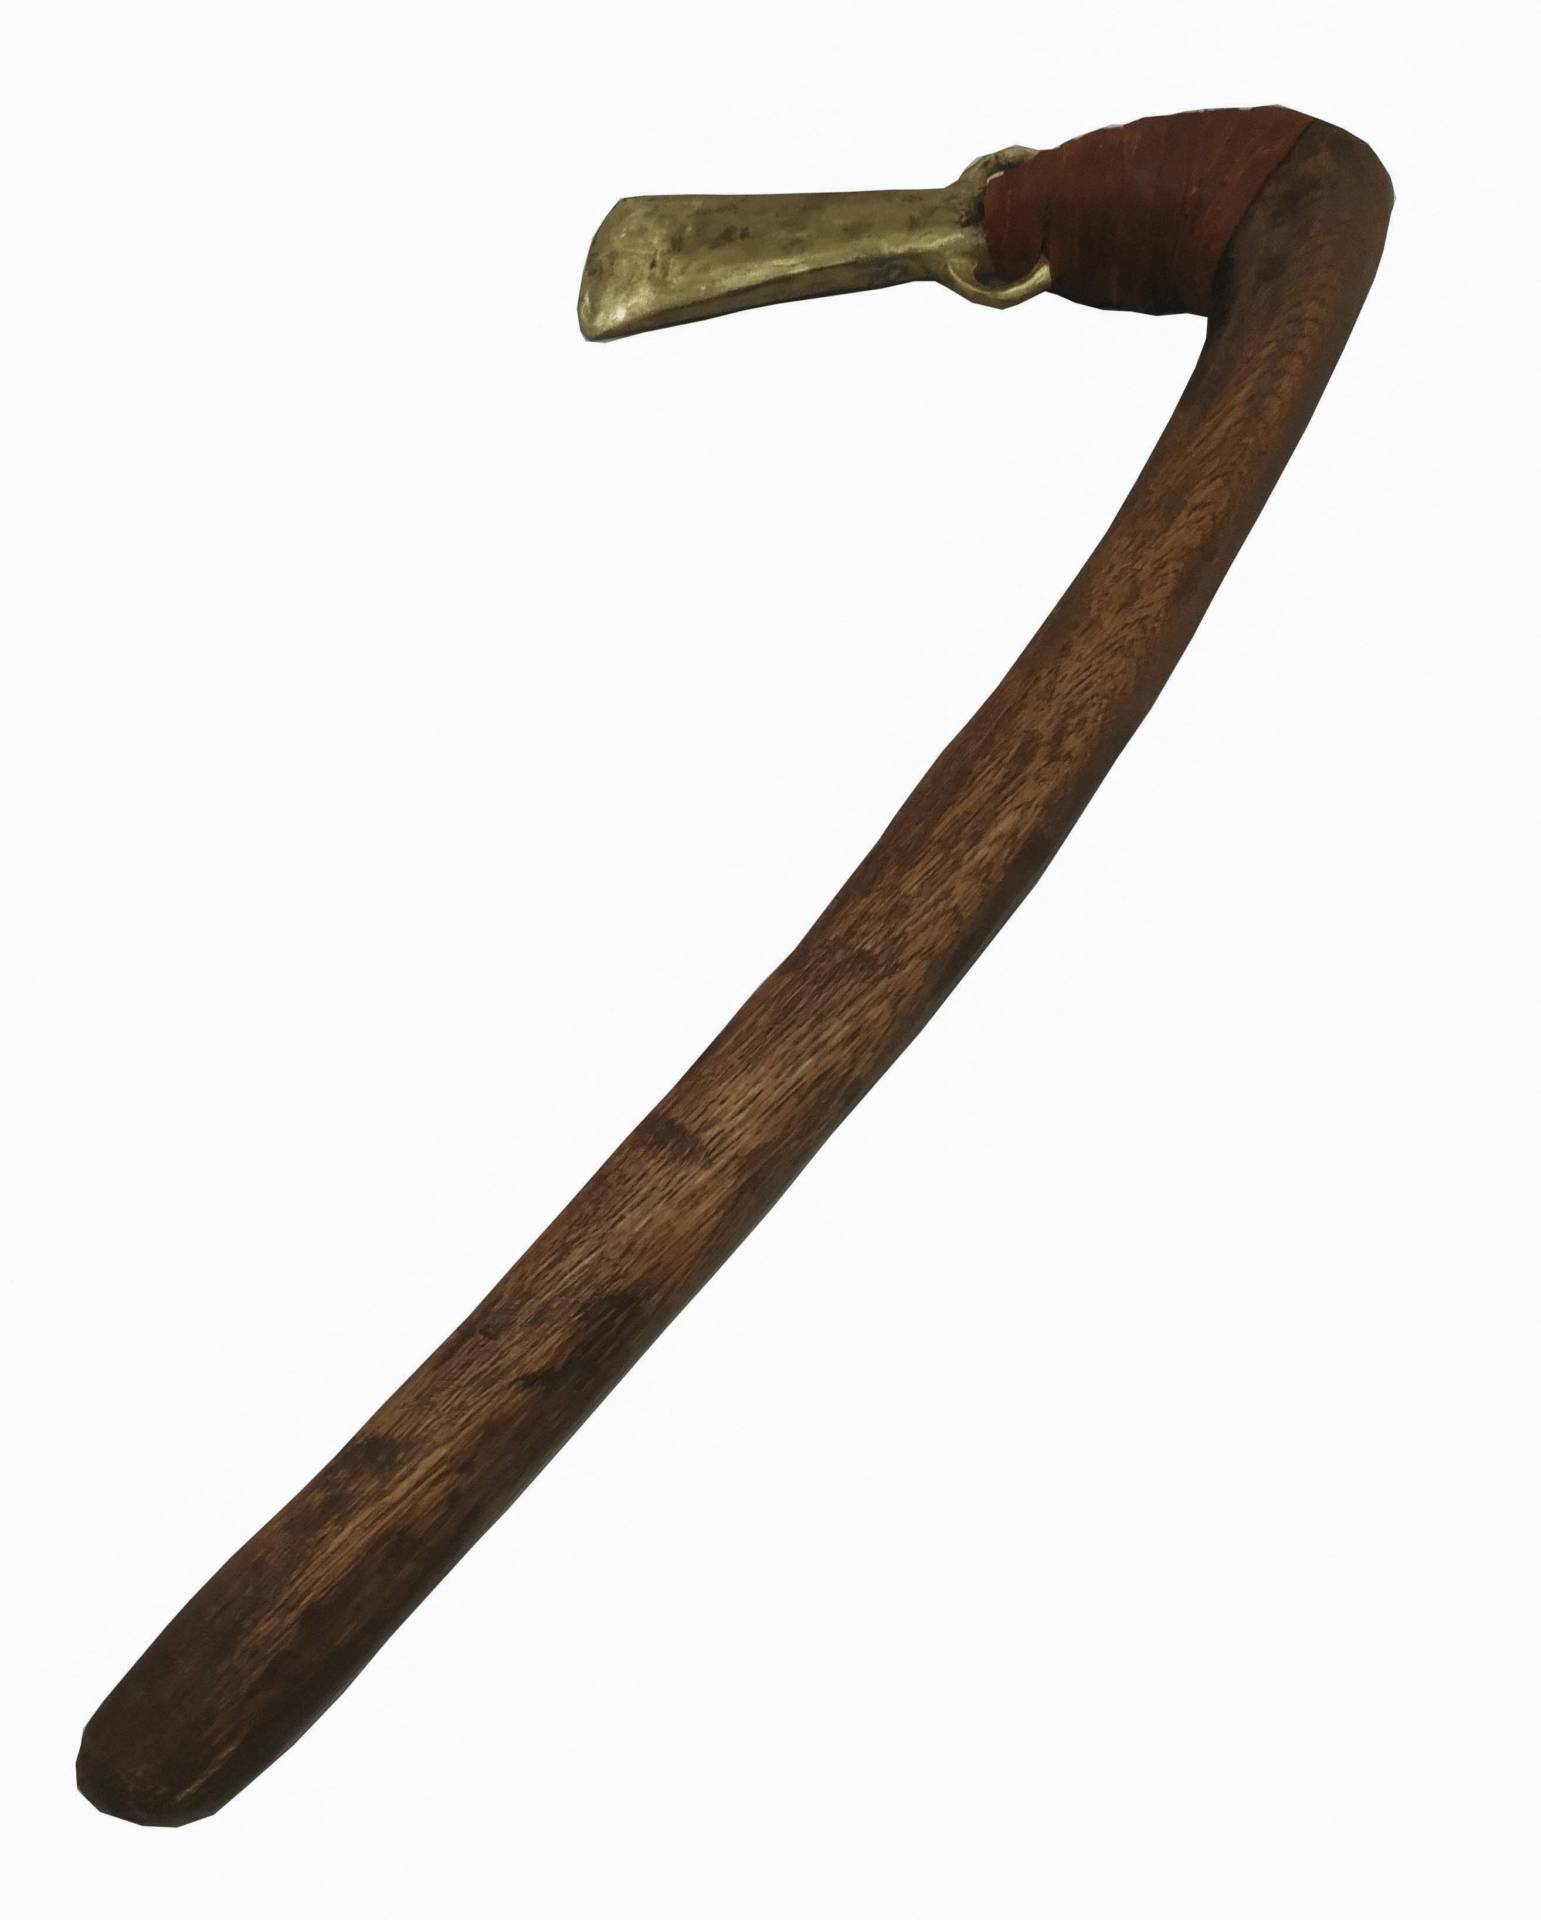 Reprodución de machado de bronce.